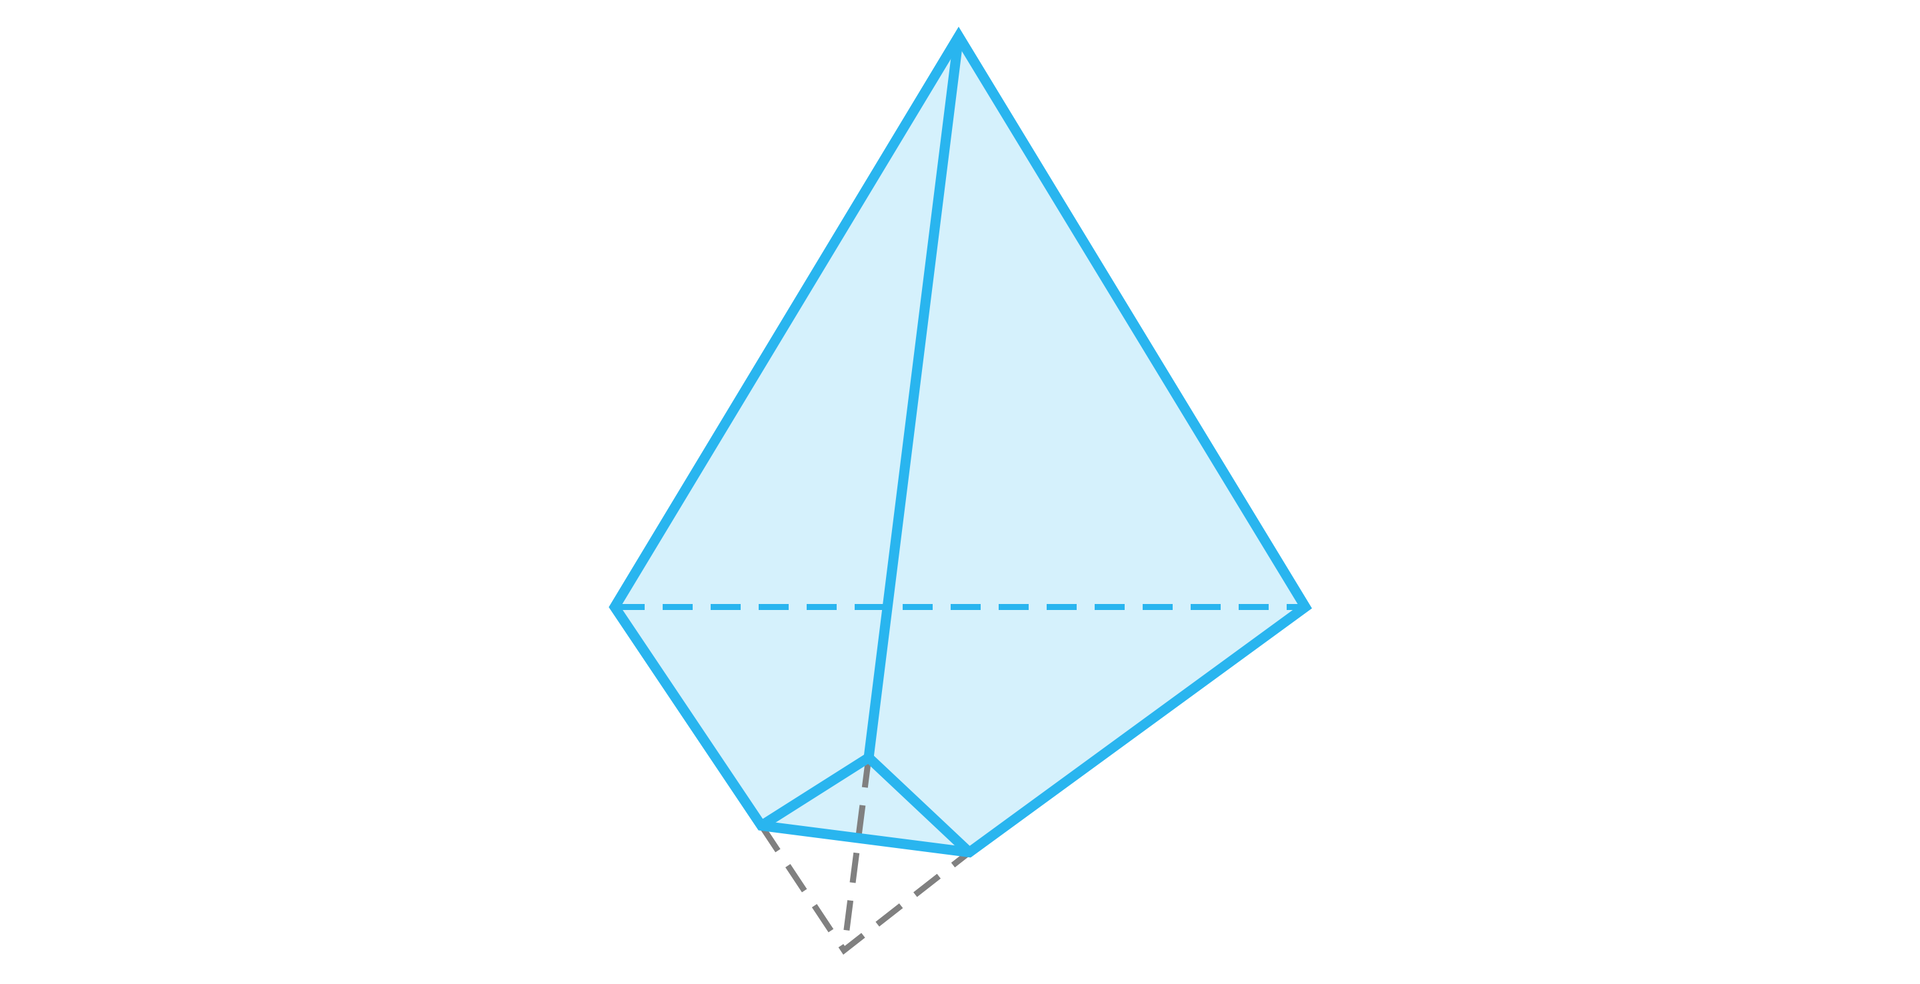 Ilustracja przedstawia ostrosłup trójkątny. Odcięto jeden z jego wierzchołków przy podstawie. Liniami przerywanymi zaznaczono krawędzie odciętej figury.